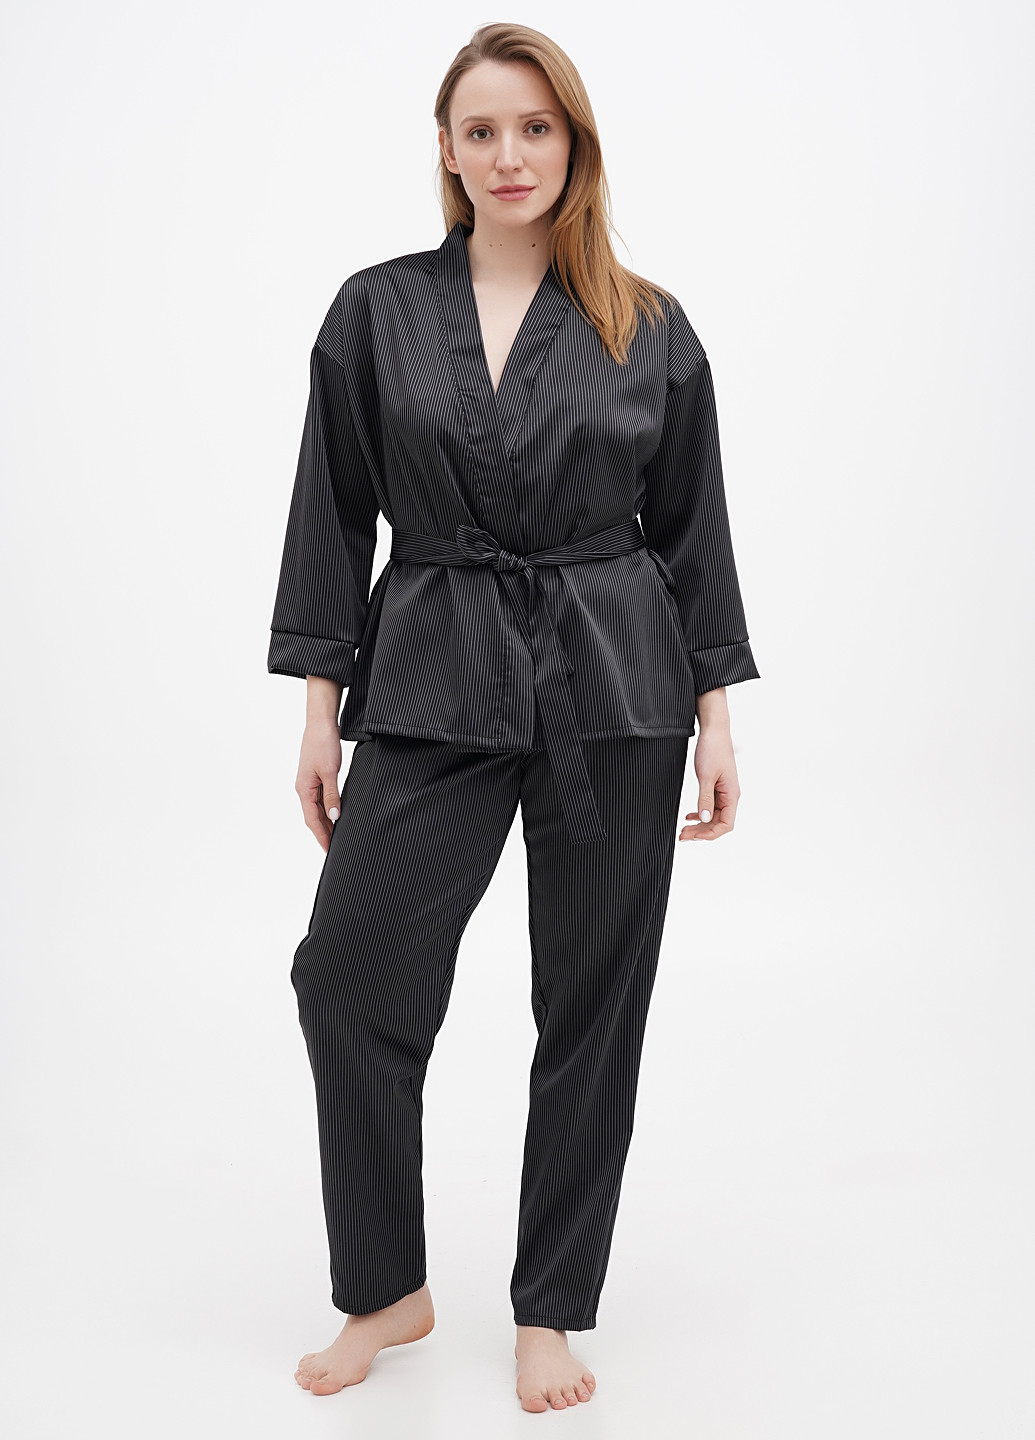 Черная всесезон пижама (рубашка, брюки) рубашка + брюки Radda